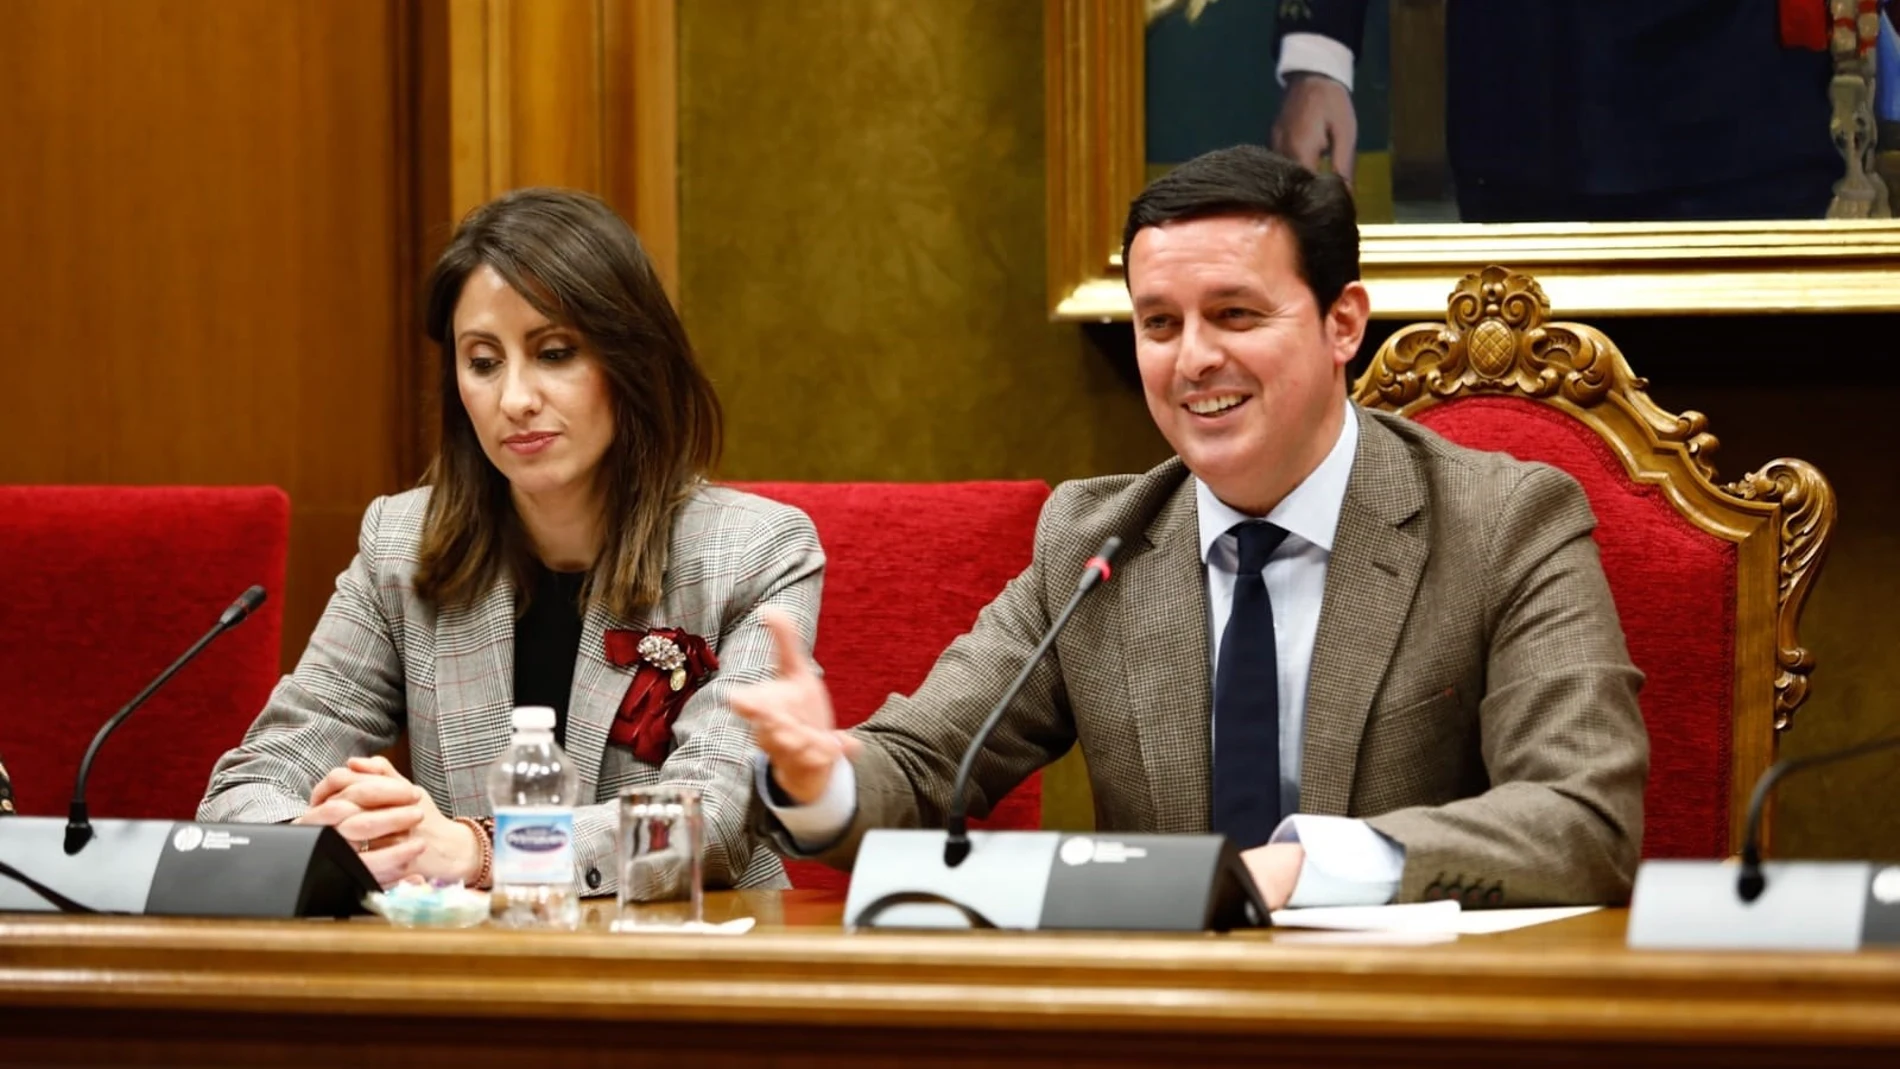 La diputada provincial de Igualdad, Carmen Belén López, junto al presidente de la Diputación de Almería, Javier A. García, en una imagen de archivo